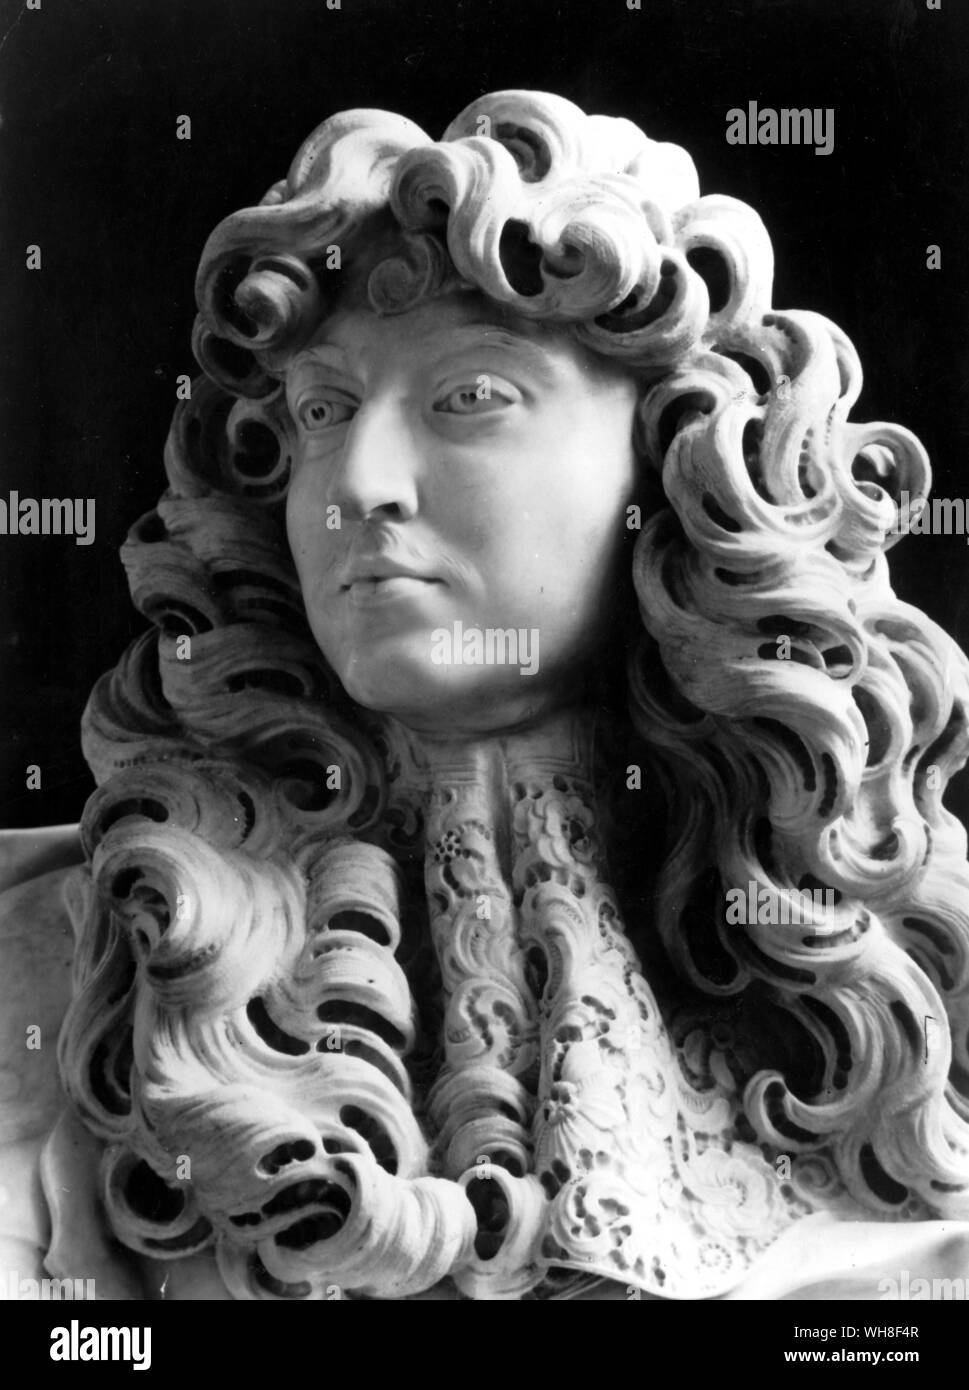 König Ludwig XIV. von Frankreich, der Sonnenkönig, (1638-1715), regierte 1643-1715. Detail der Marmorbüste von Lorenzo Bernini (1598-1680), datiert 1665. Der Sonnenkönig von Nancy Mitford, Seite 23. Stockfoto